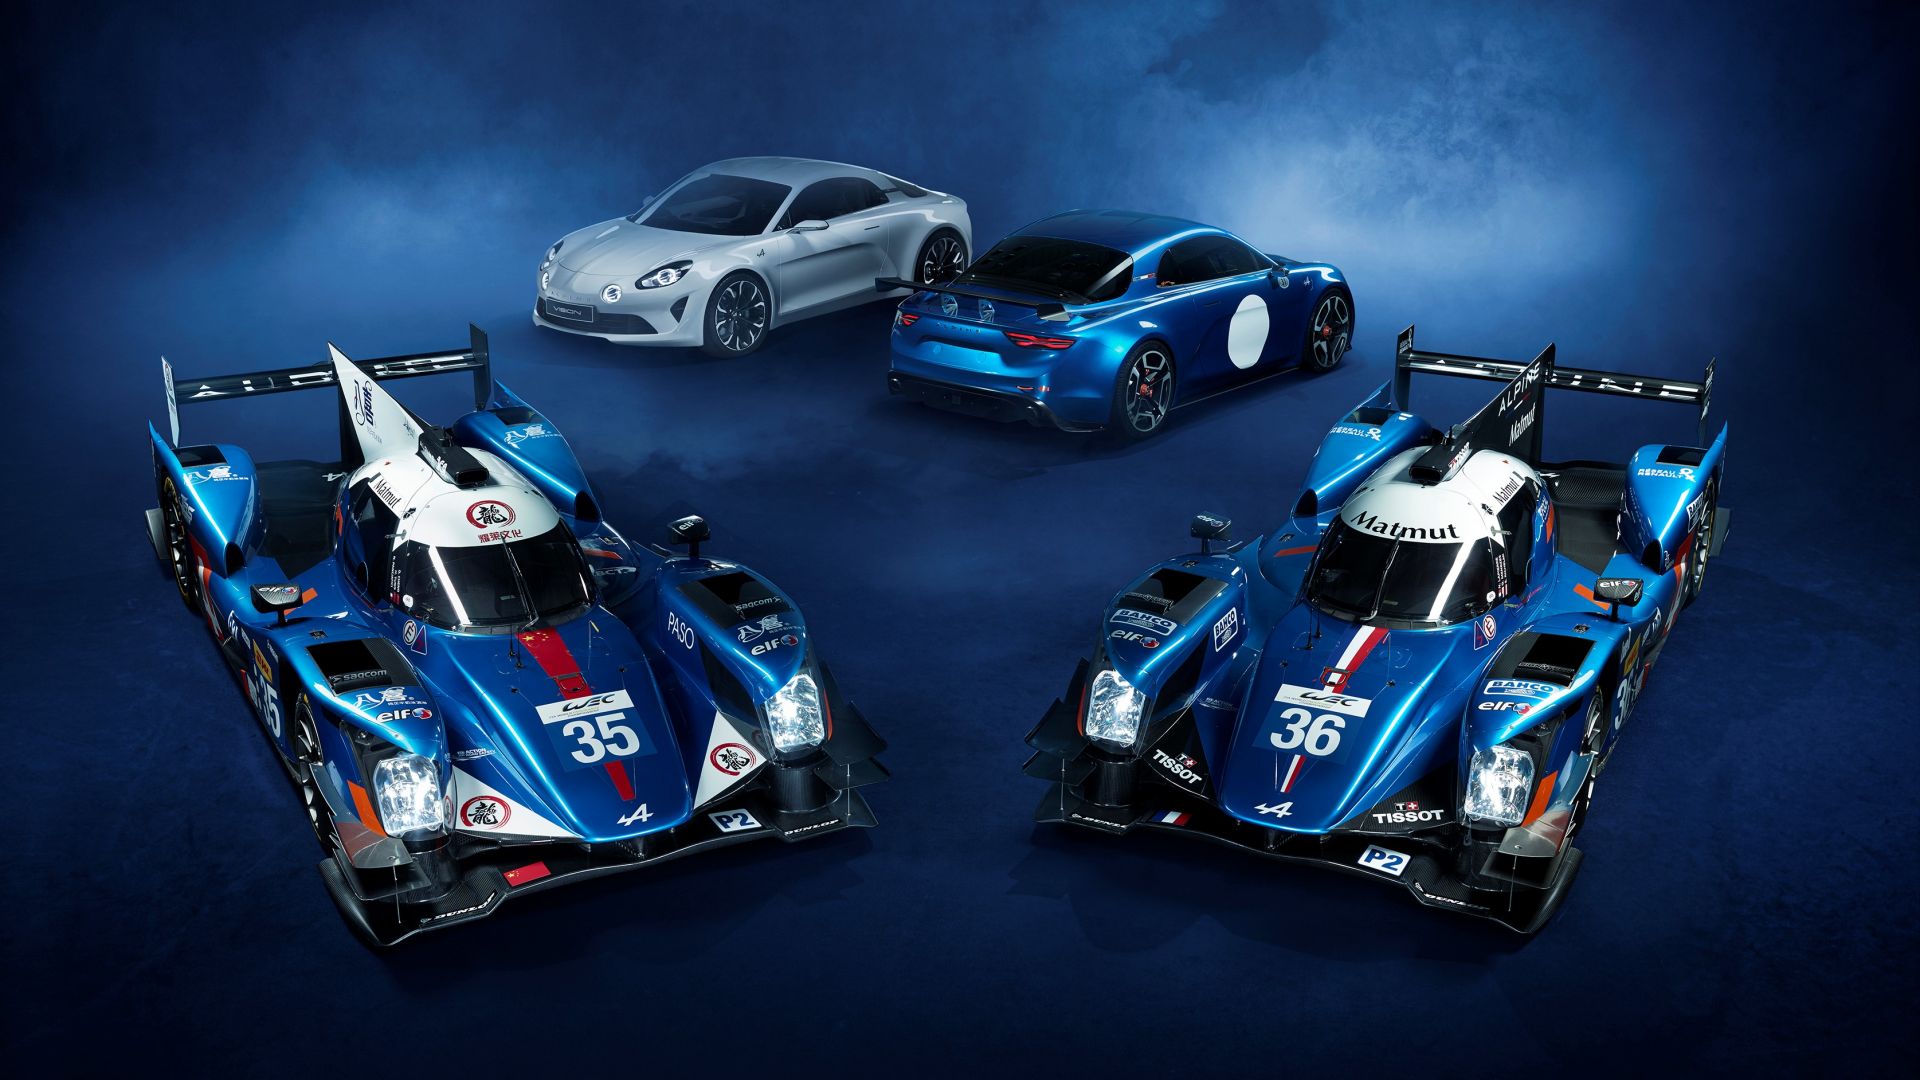 Ренаулт Альфин А460, спортивные автомобили, 24 часа Ле-Мана, ЛМП2, Renault Alpine A460, sport cars, Le Mans, LMP2 (horizontal)